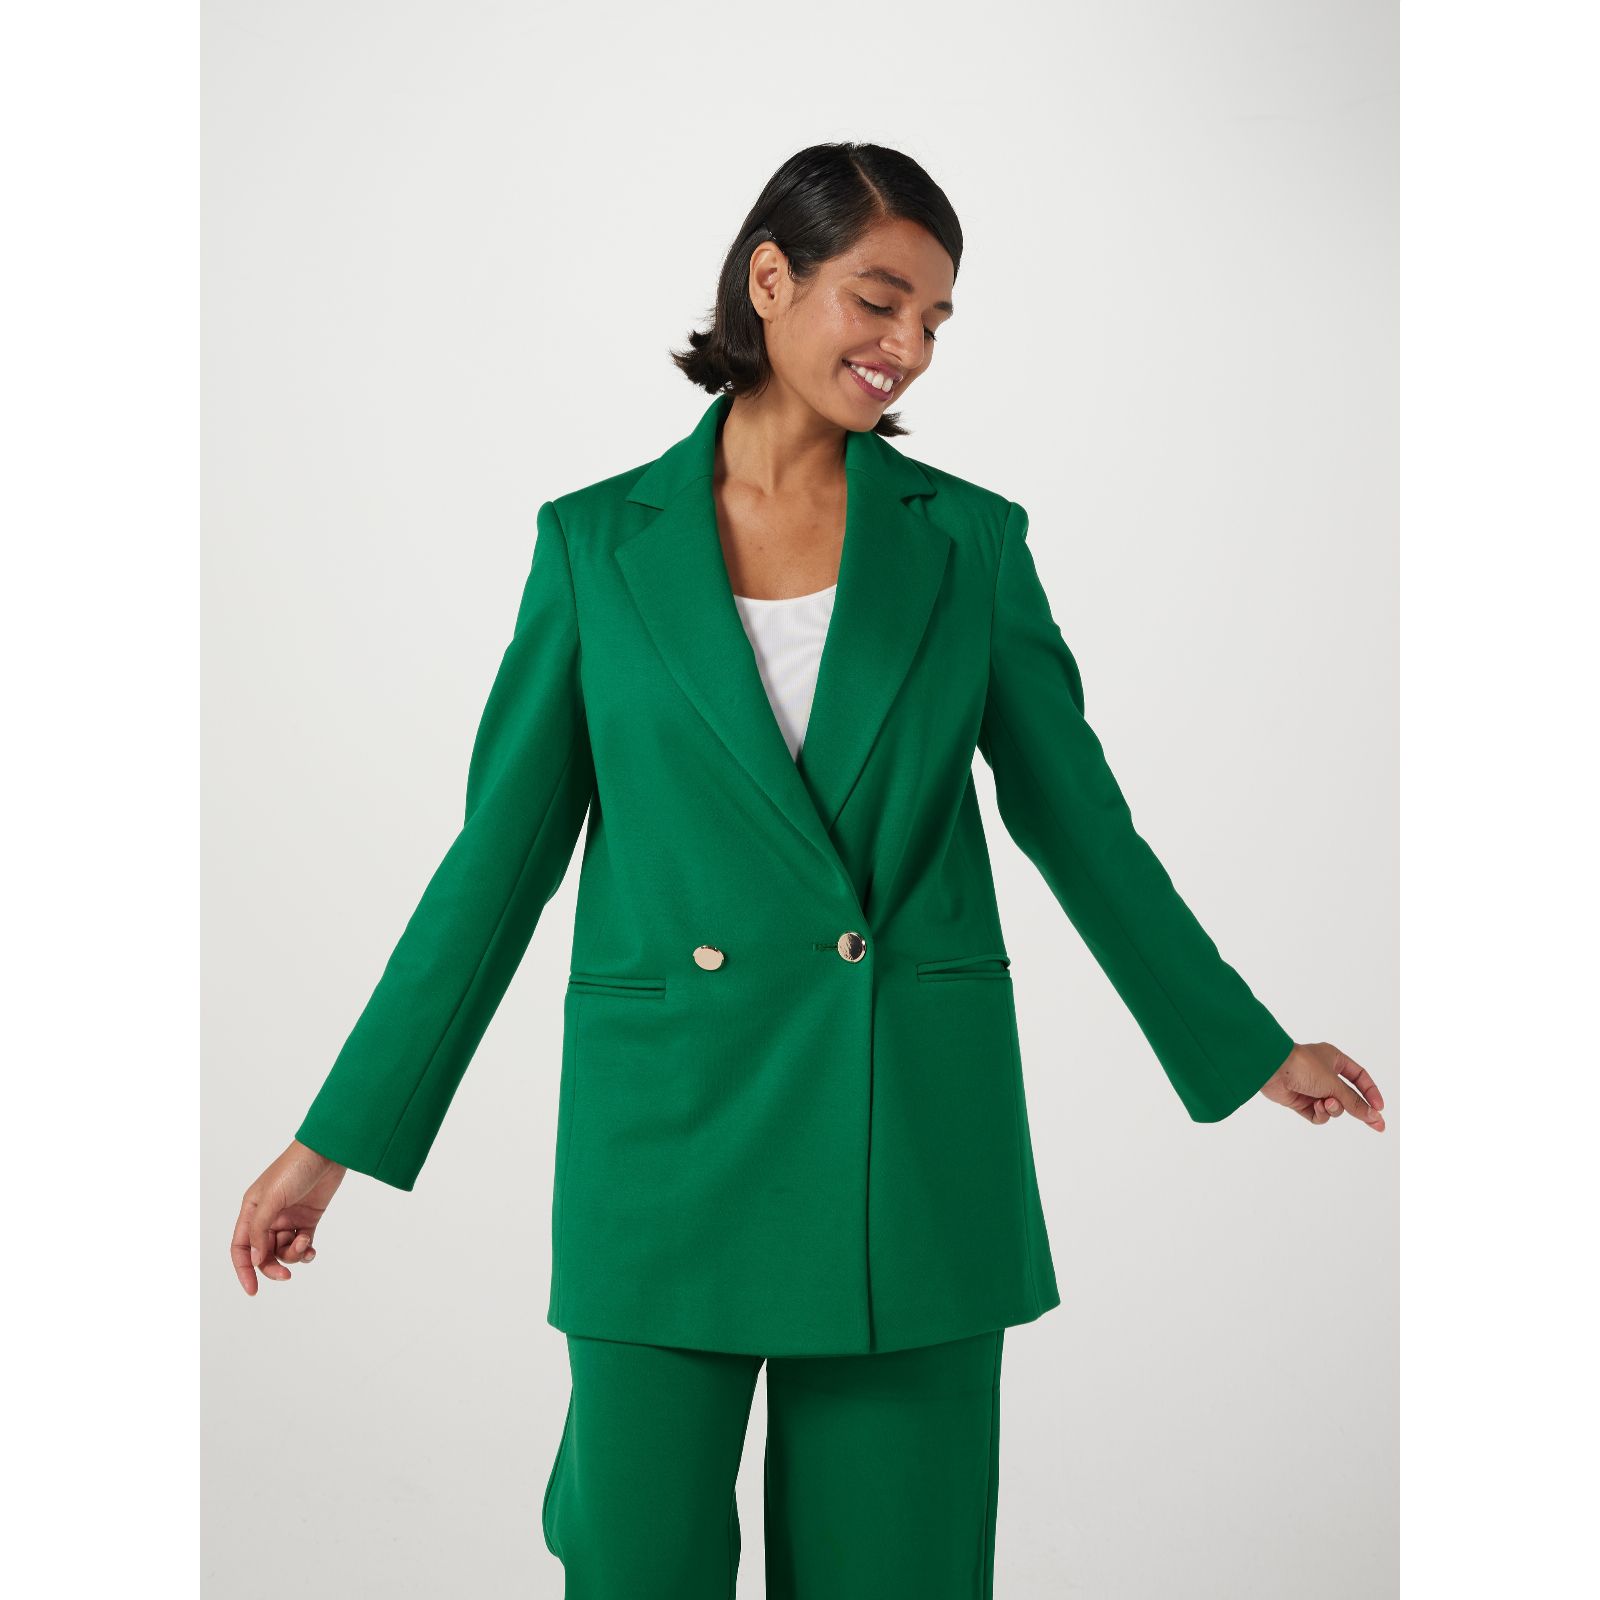 Helene Berman Women's Frill Tweed Jacket